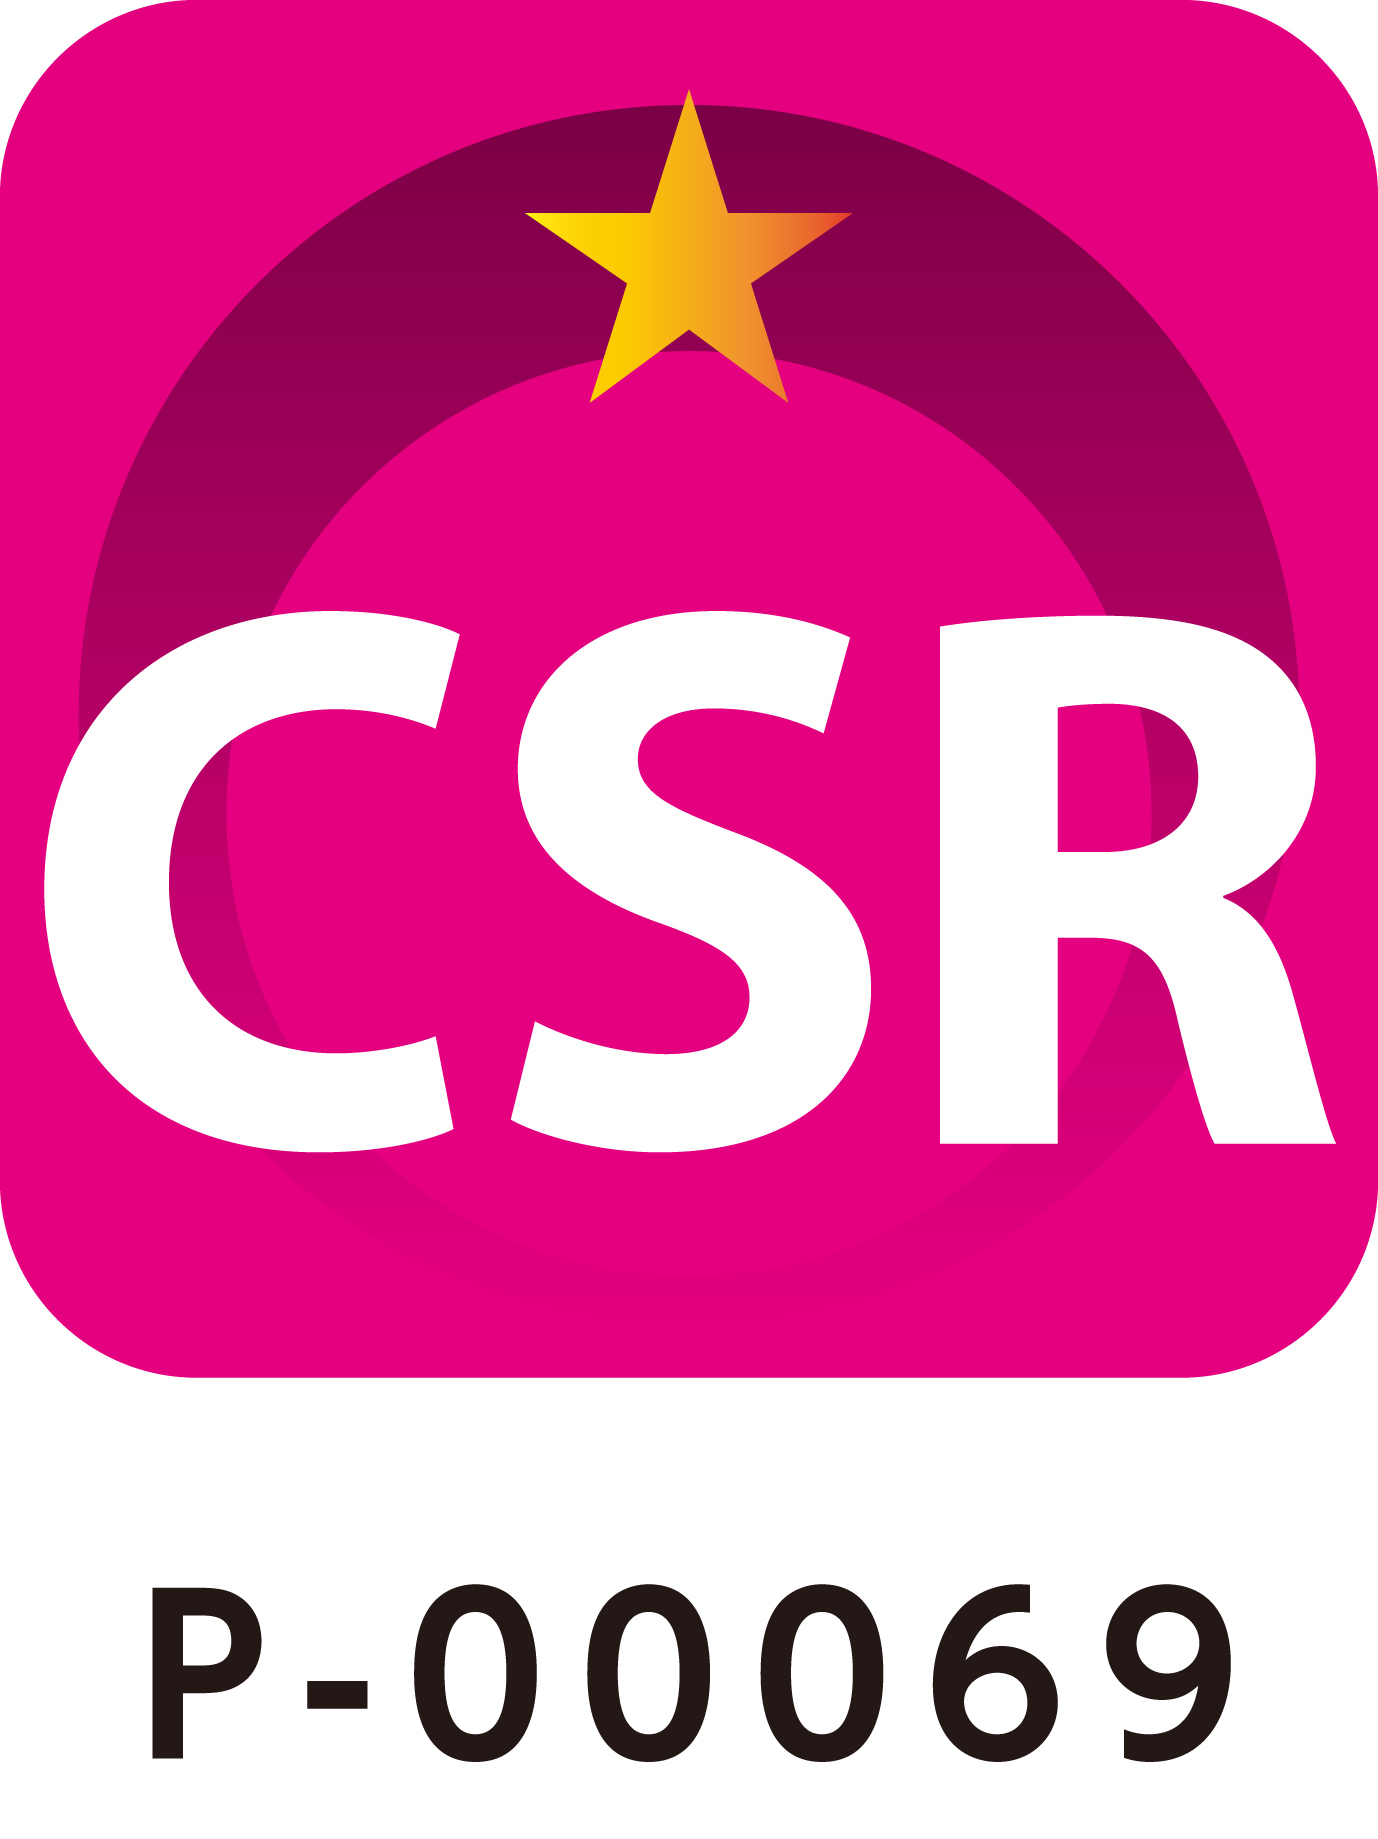 全印工連 CSR 認定制度